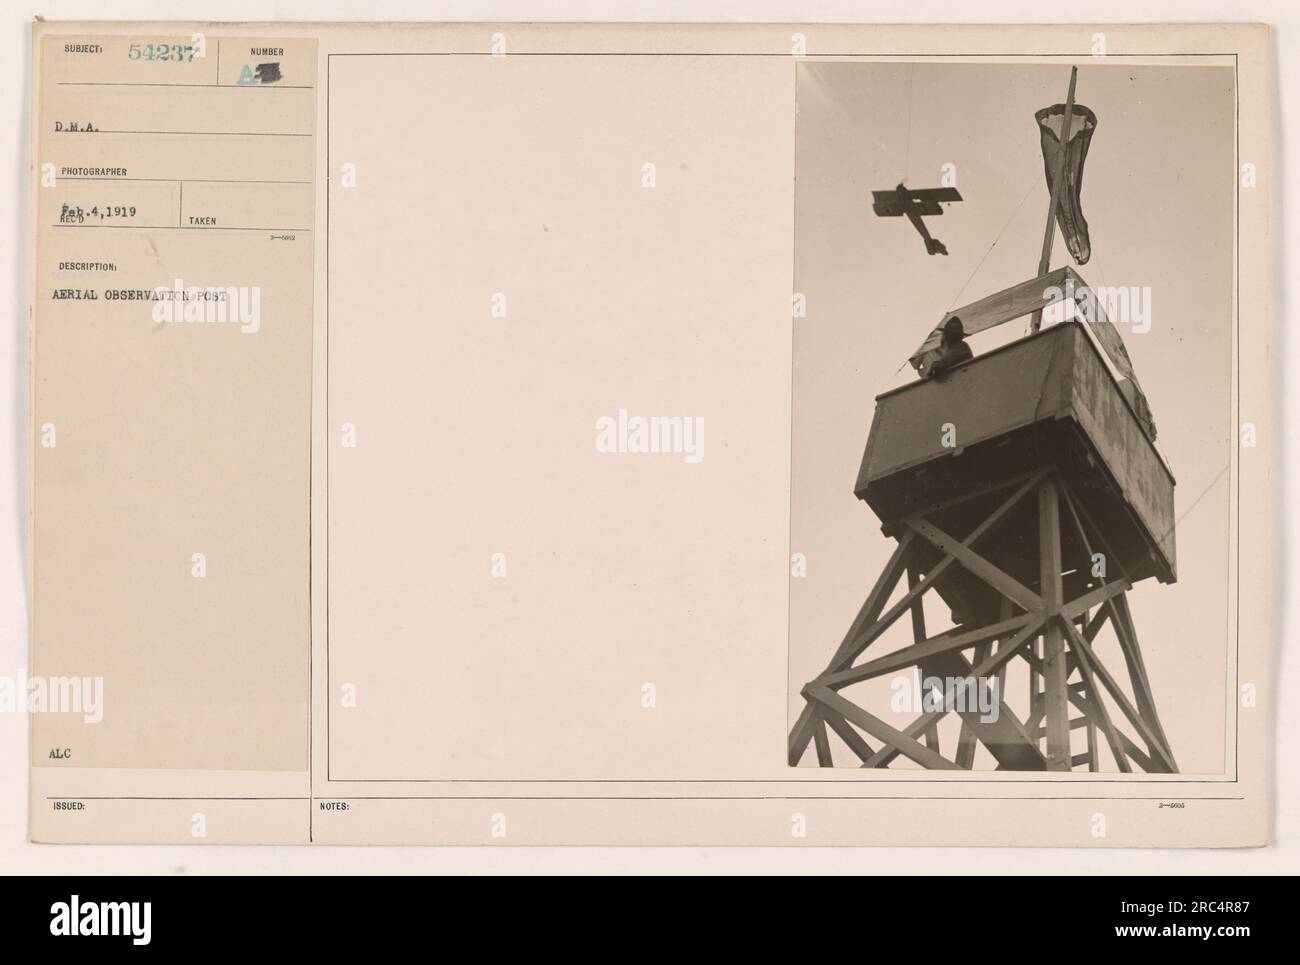 Luftbeobachtungsposten, eingerichtet während des Ersten Weltkriegs. Dieses Foto wurde von der D.M.A. aufgenommen Fotograf E-4 in 1919. Die Stelle wurde zur Überwachung militärischer Aktivitäten von oben genutzt. Das Bild ist mit der Nummer 54237 beschriftet und enthält zusätzliche Hinweise oder Informationen. Stockfoto